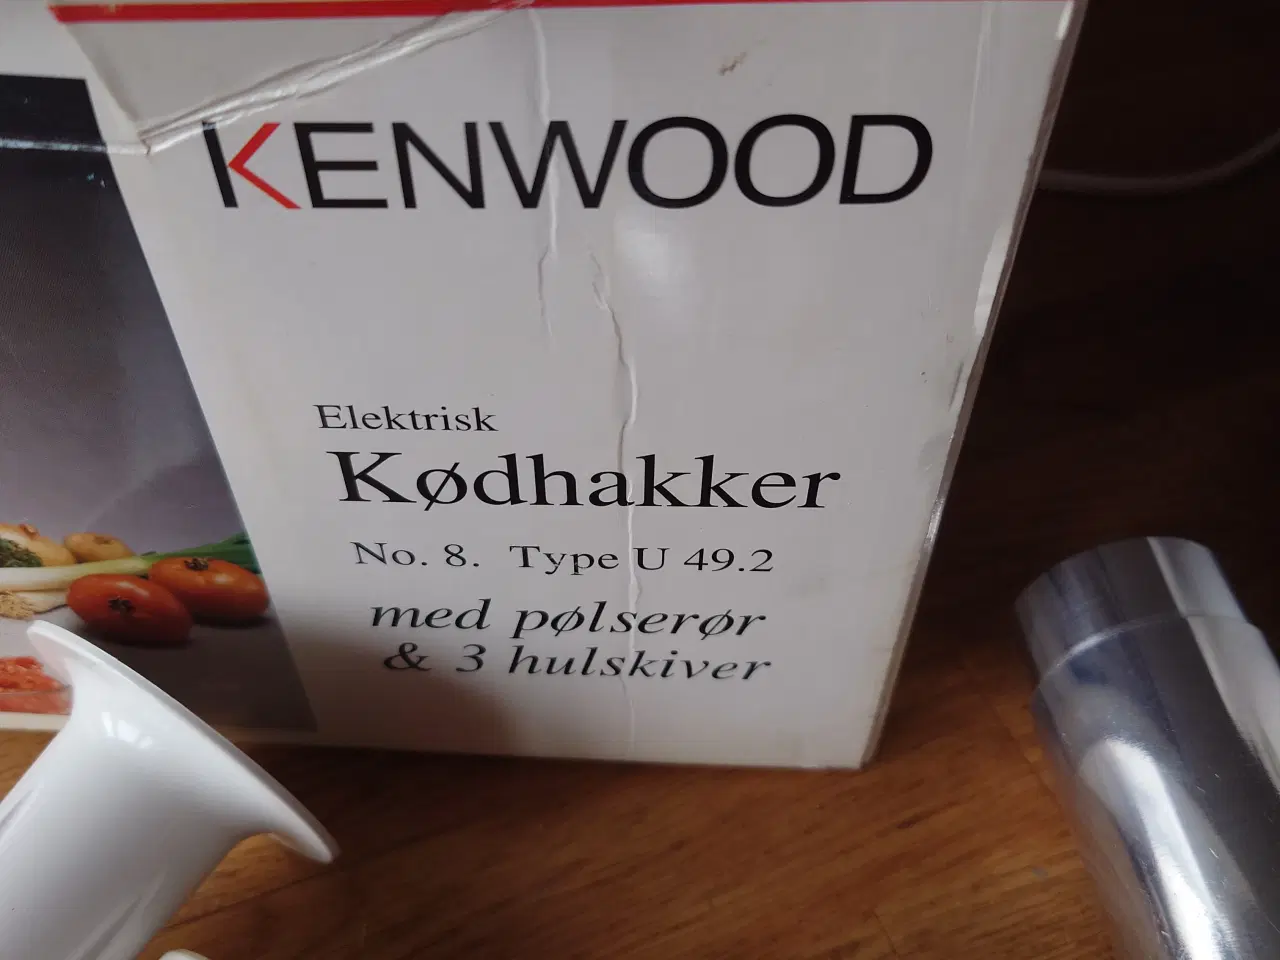 Billede 6 - Kenwood kødhakker med pølserør mm